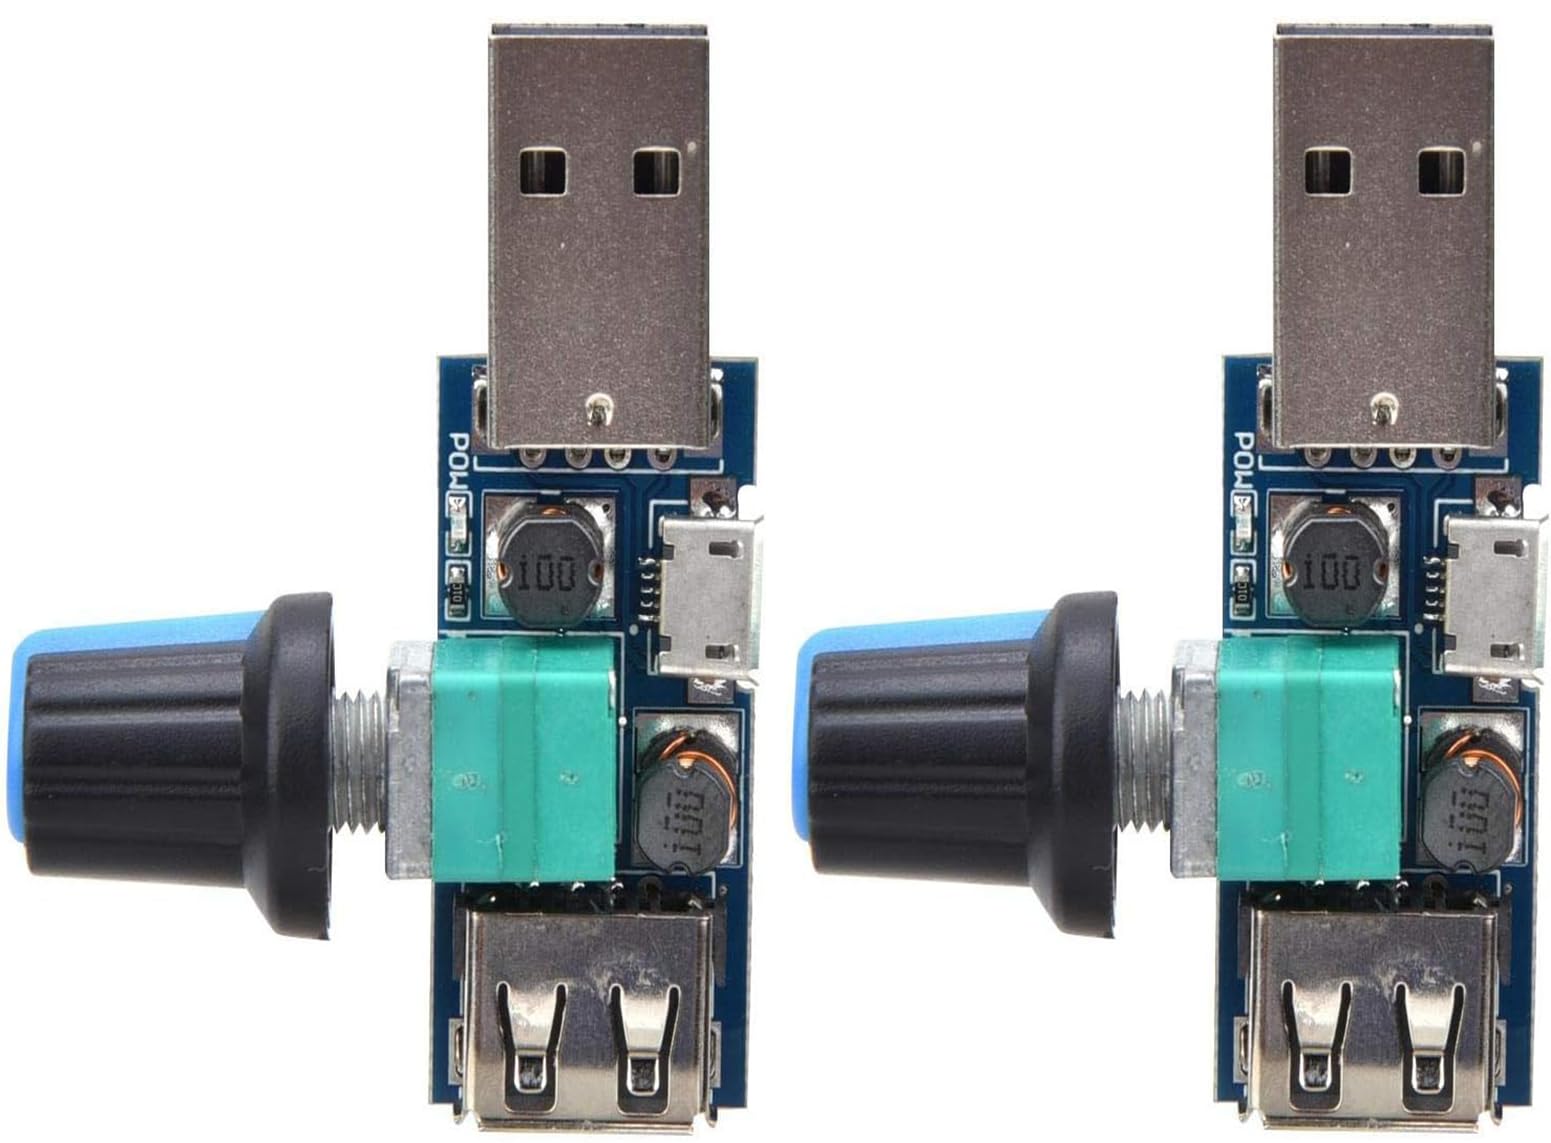 JUTOSU USB速度コントローラ スピードコントローラ パワーコントローラ スピードレギュレーター スピードコントローラスイッチ 変速スイッチモジュール ミニ回転制御ポテンショメータ DCモーター ミニモータ 速度コントローラー 制御モジュール 無段階調節 無段階 USB扇